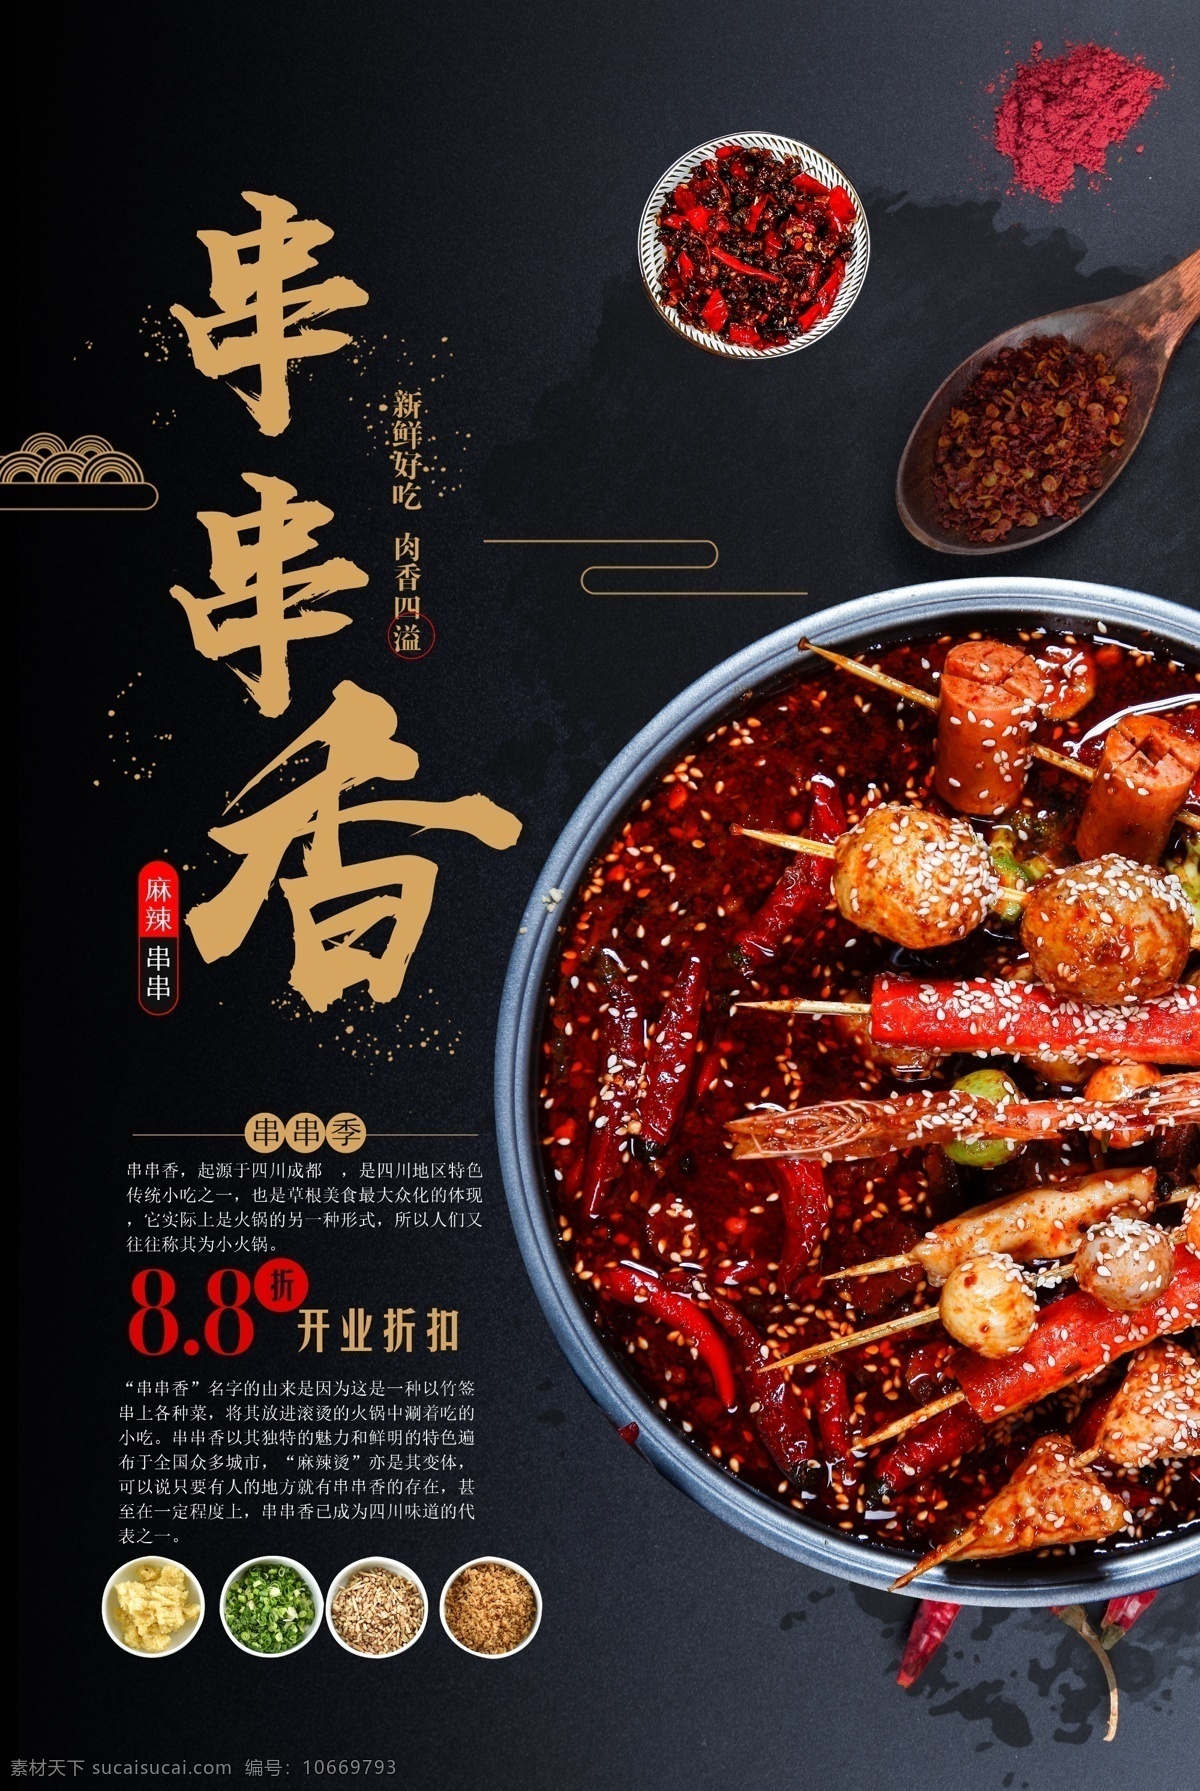 串串 香 火锅 食物 食 材 美食 促销活动 串串香 食材 促销 活动 海报